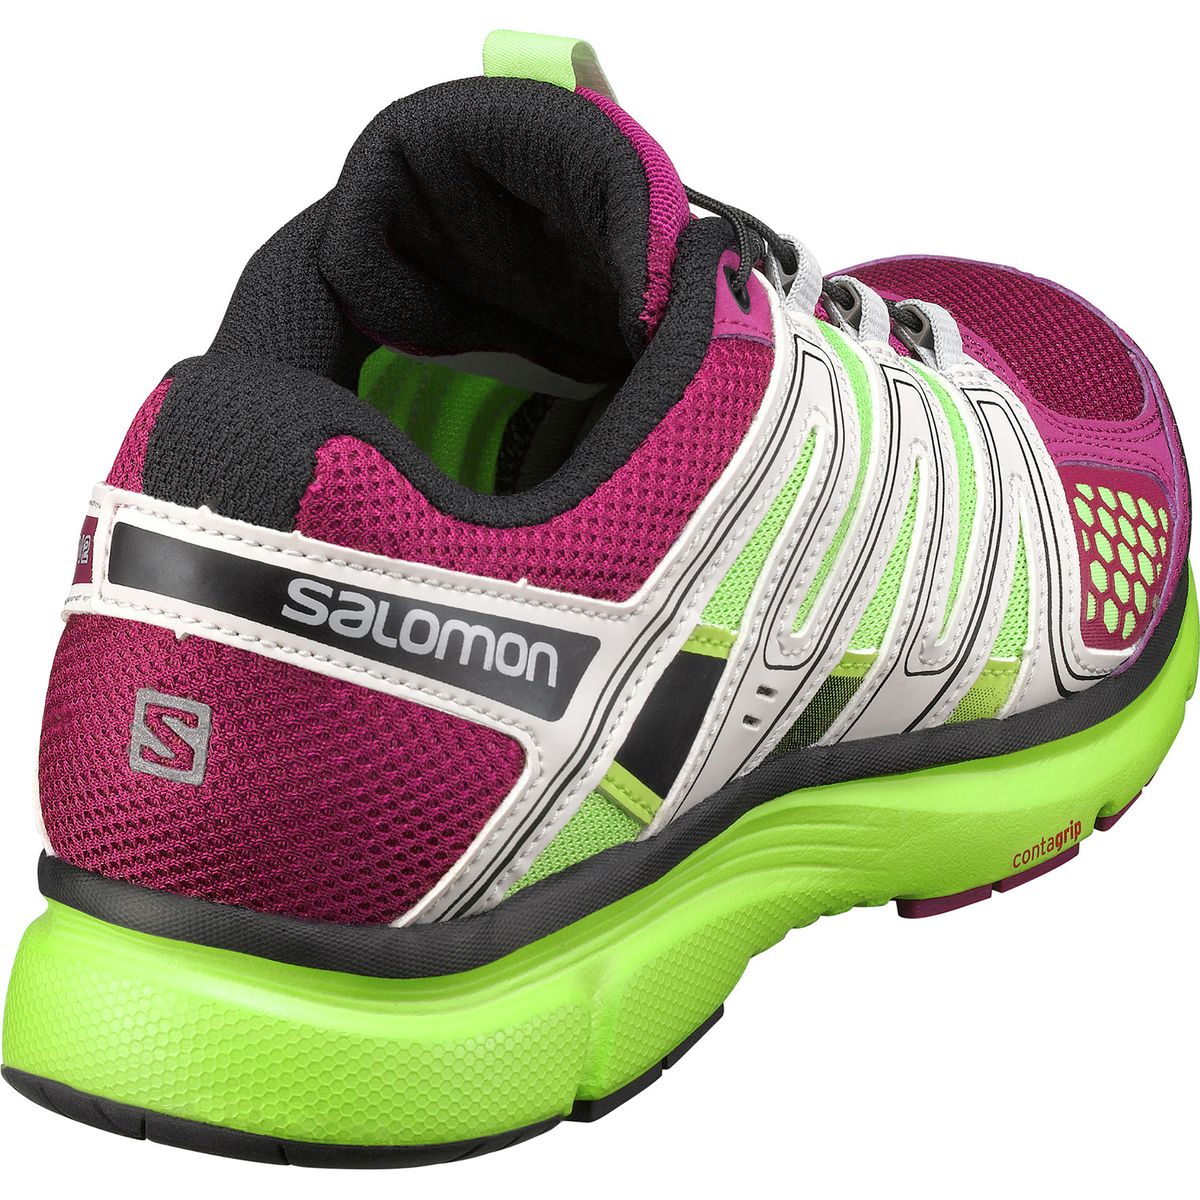 Salomon X-Mission Running Shoe - Women's - Footwear